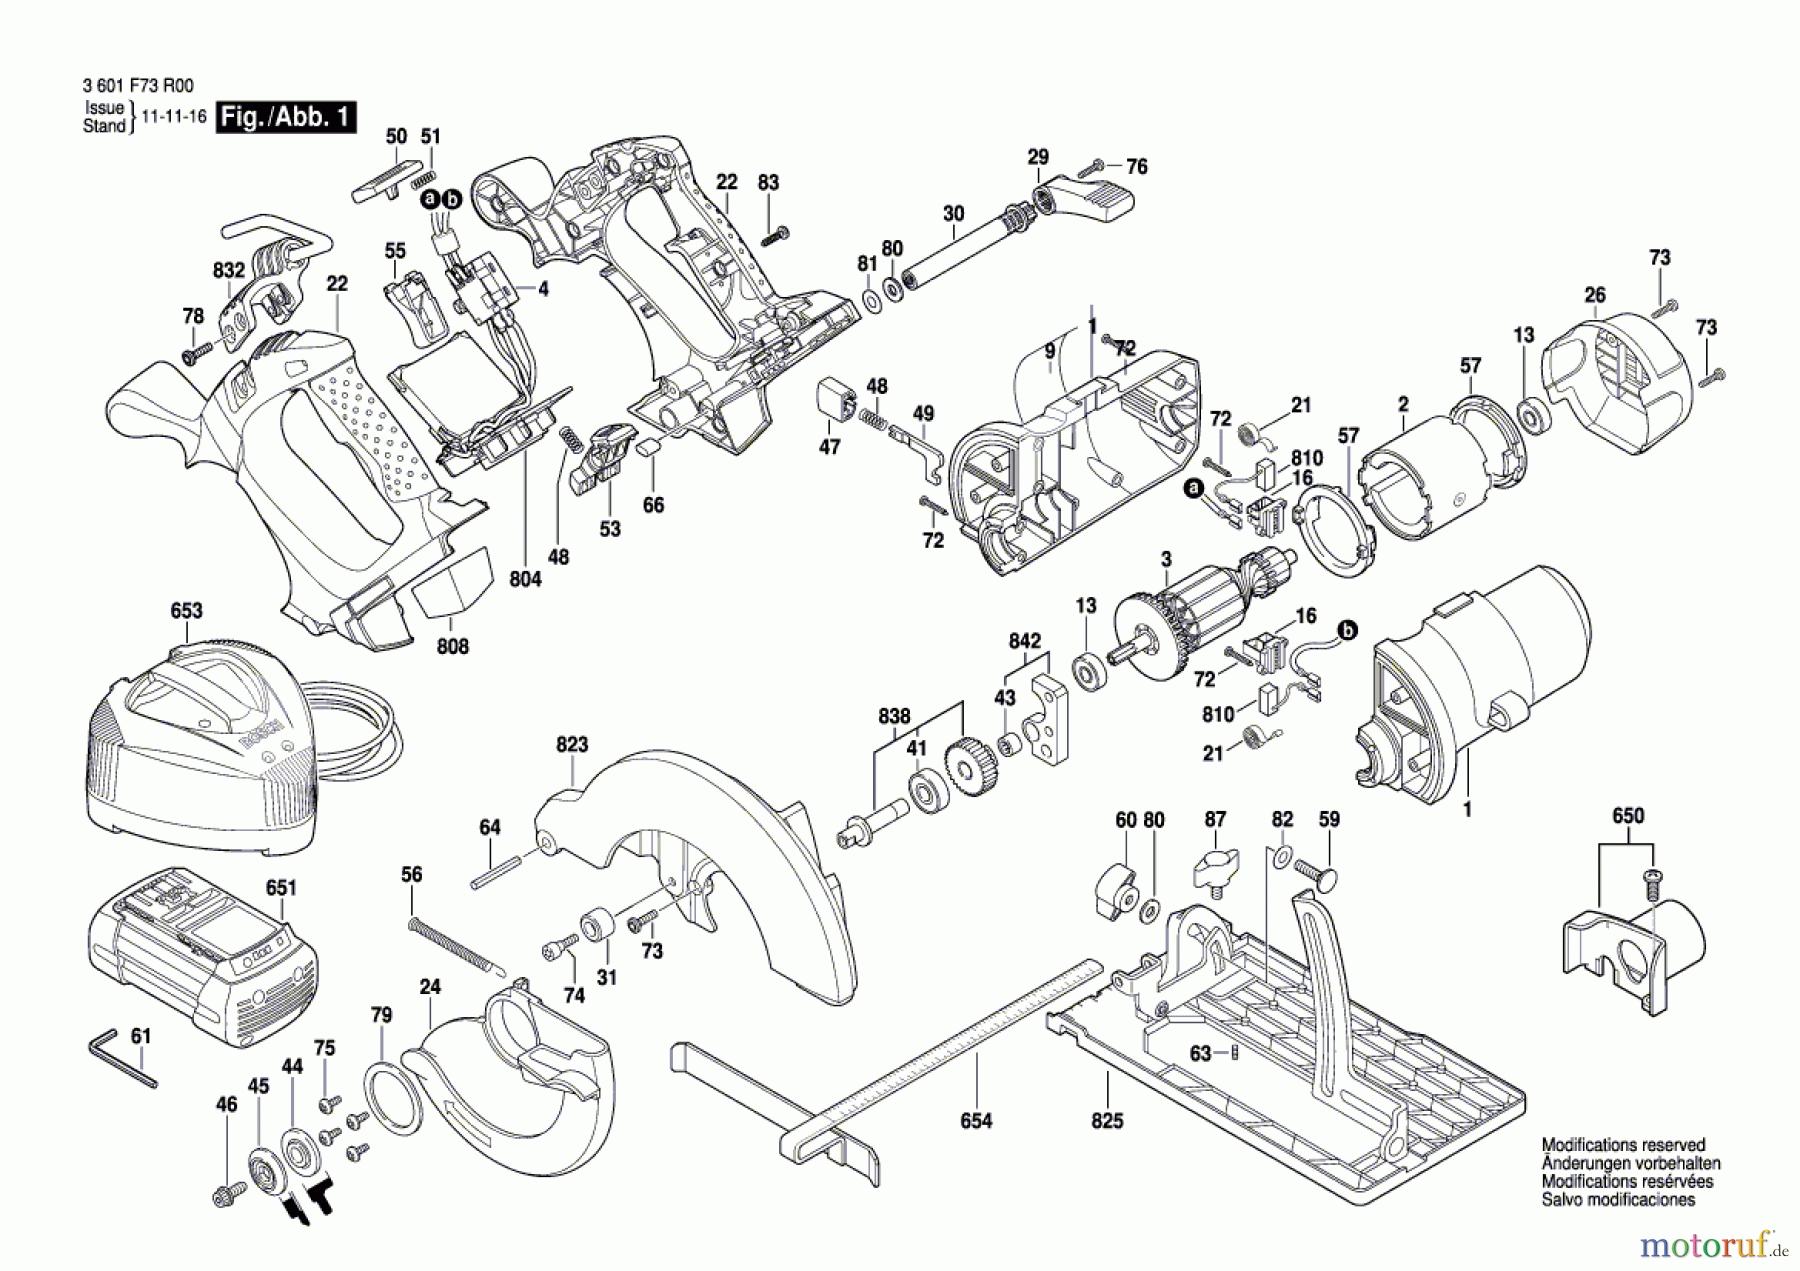  Bosch Akku Werkzeug Akku-Kreissäge GKS 36 V-LI Seite 1